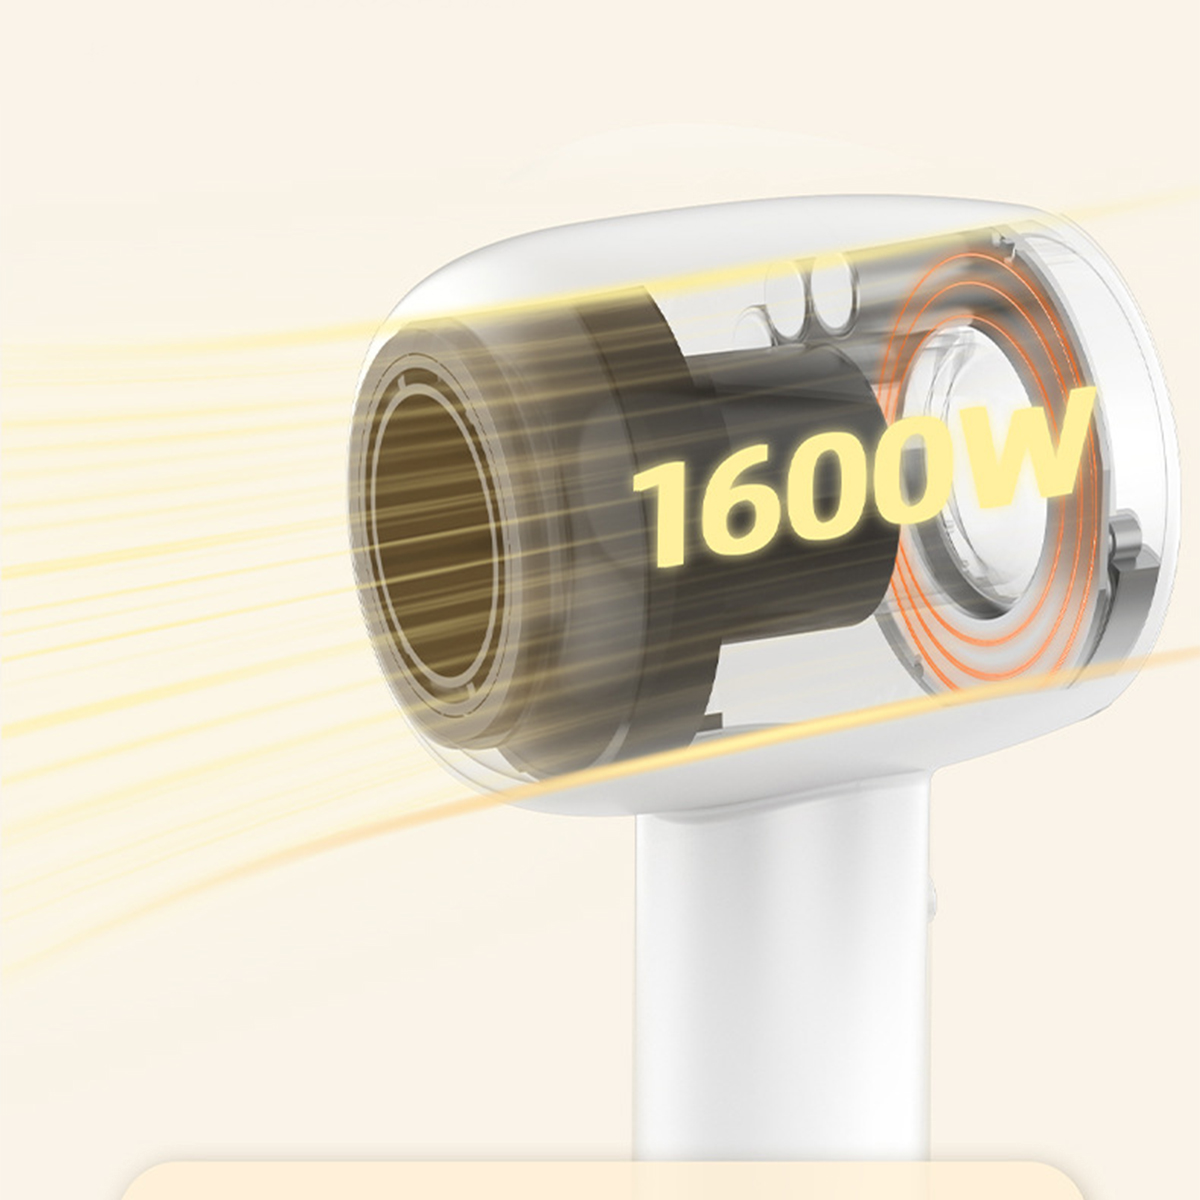 SHAOKE Leistungsstarker Haartrockner Ionic leisem Betrieb 1600W Haartrockner Schnelltrocknung Schwarz,Gold (1600 mit Watt)